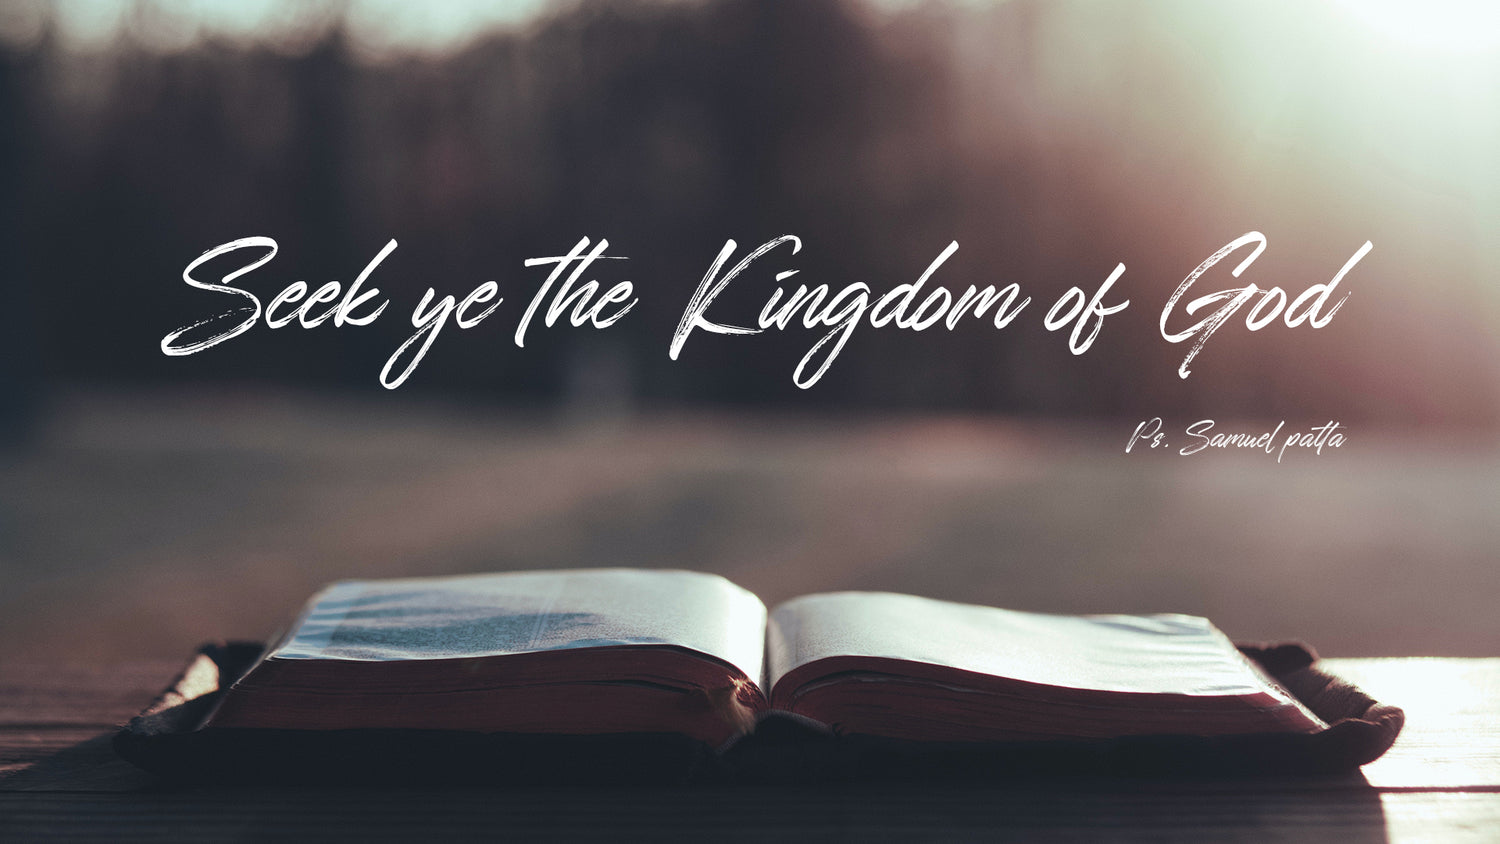 Seek ye the Kingdom of God